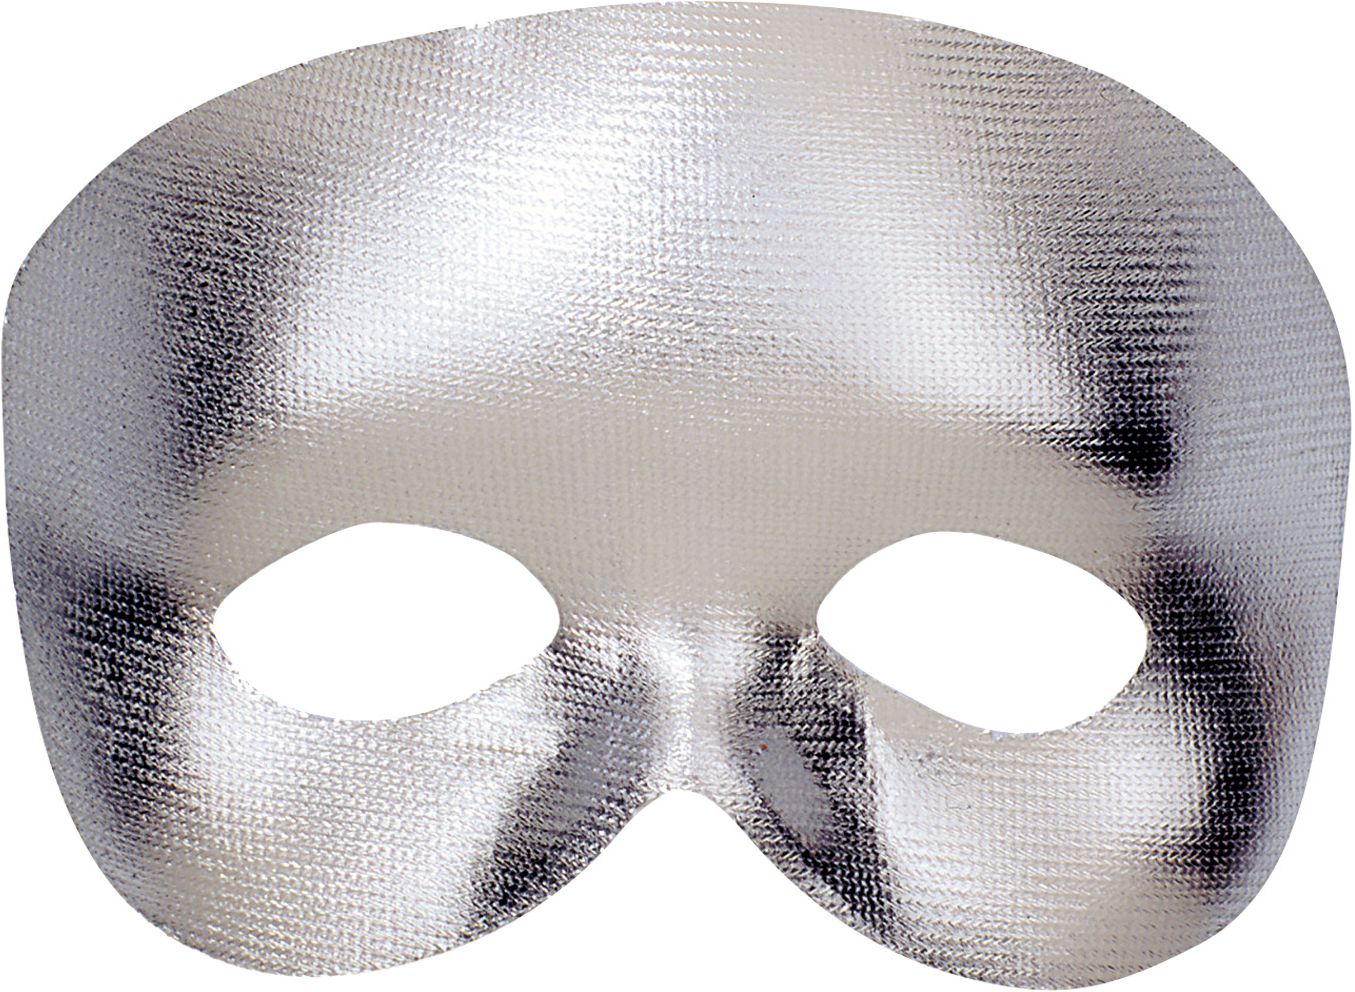 Fantoom oogmasker zilver